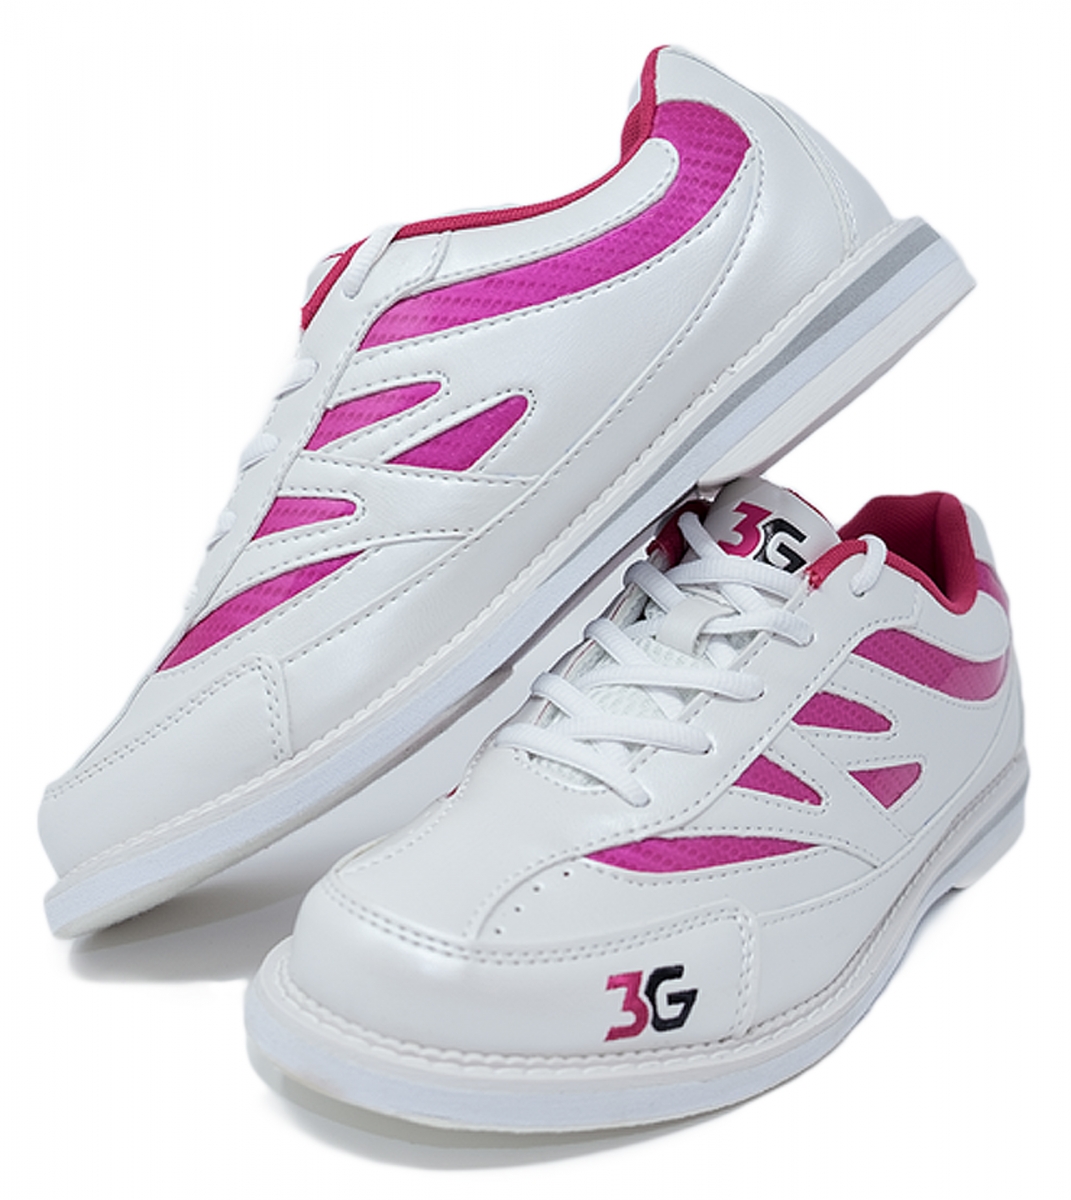 Weiß/Pink Bowlingschuhe für Damen 3G Kicks 